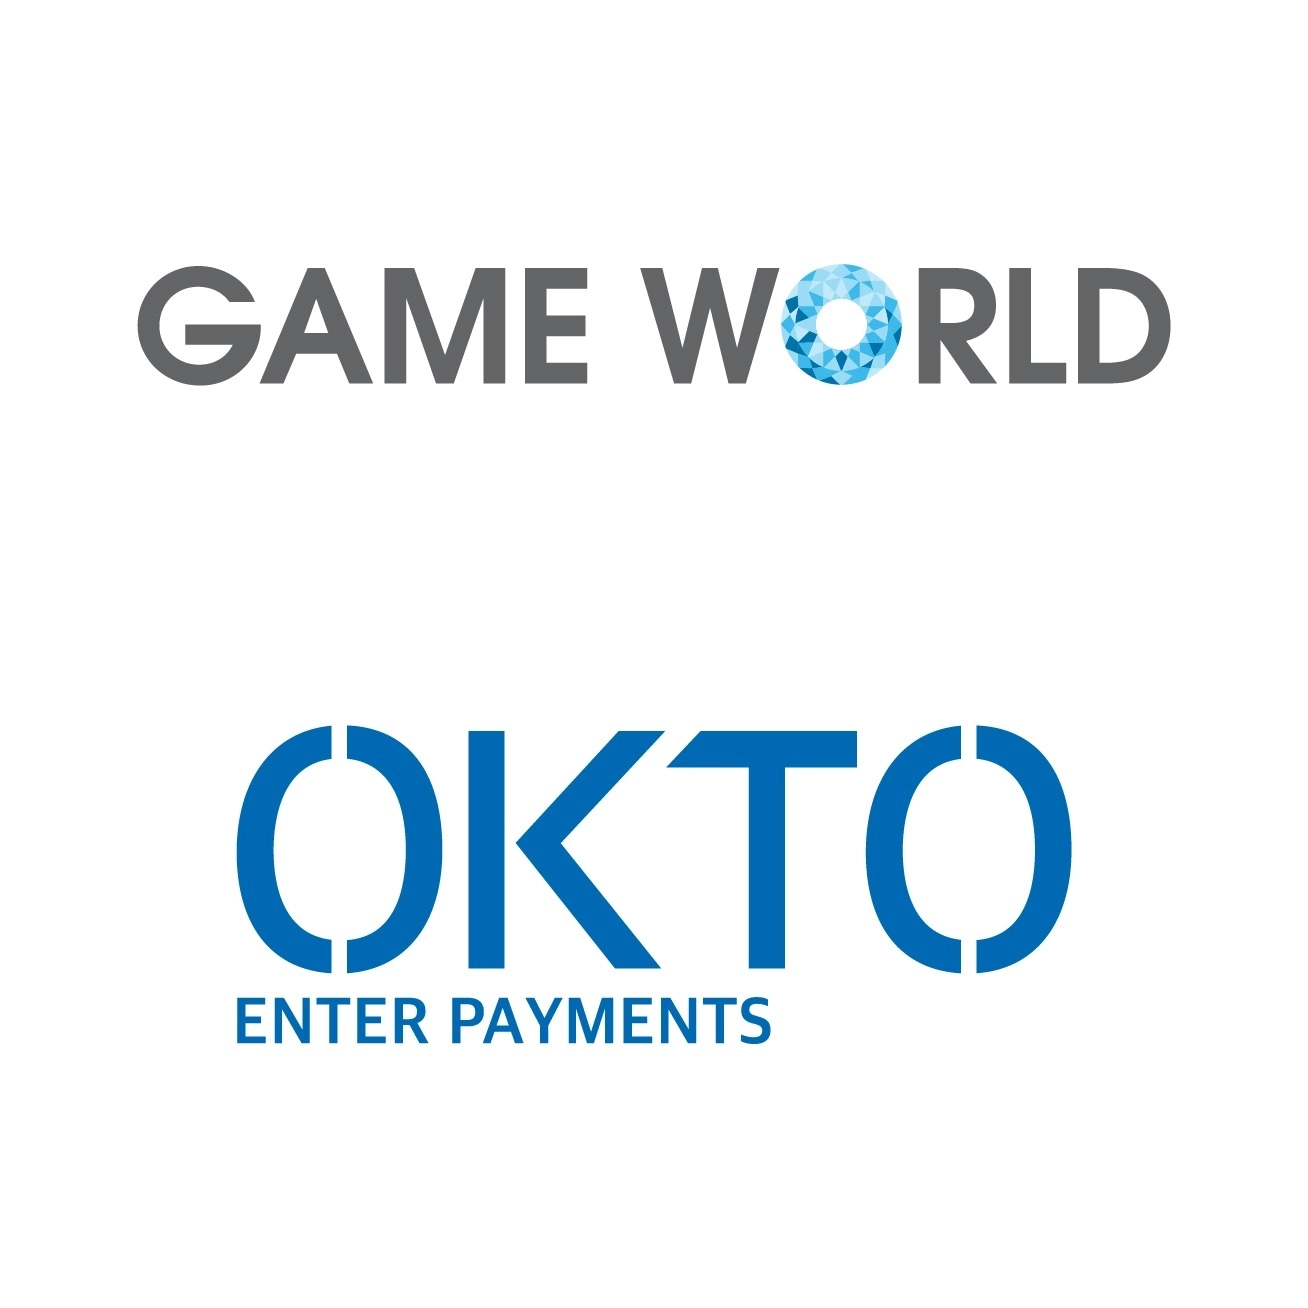 Game World Okto Enter Payments